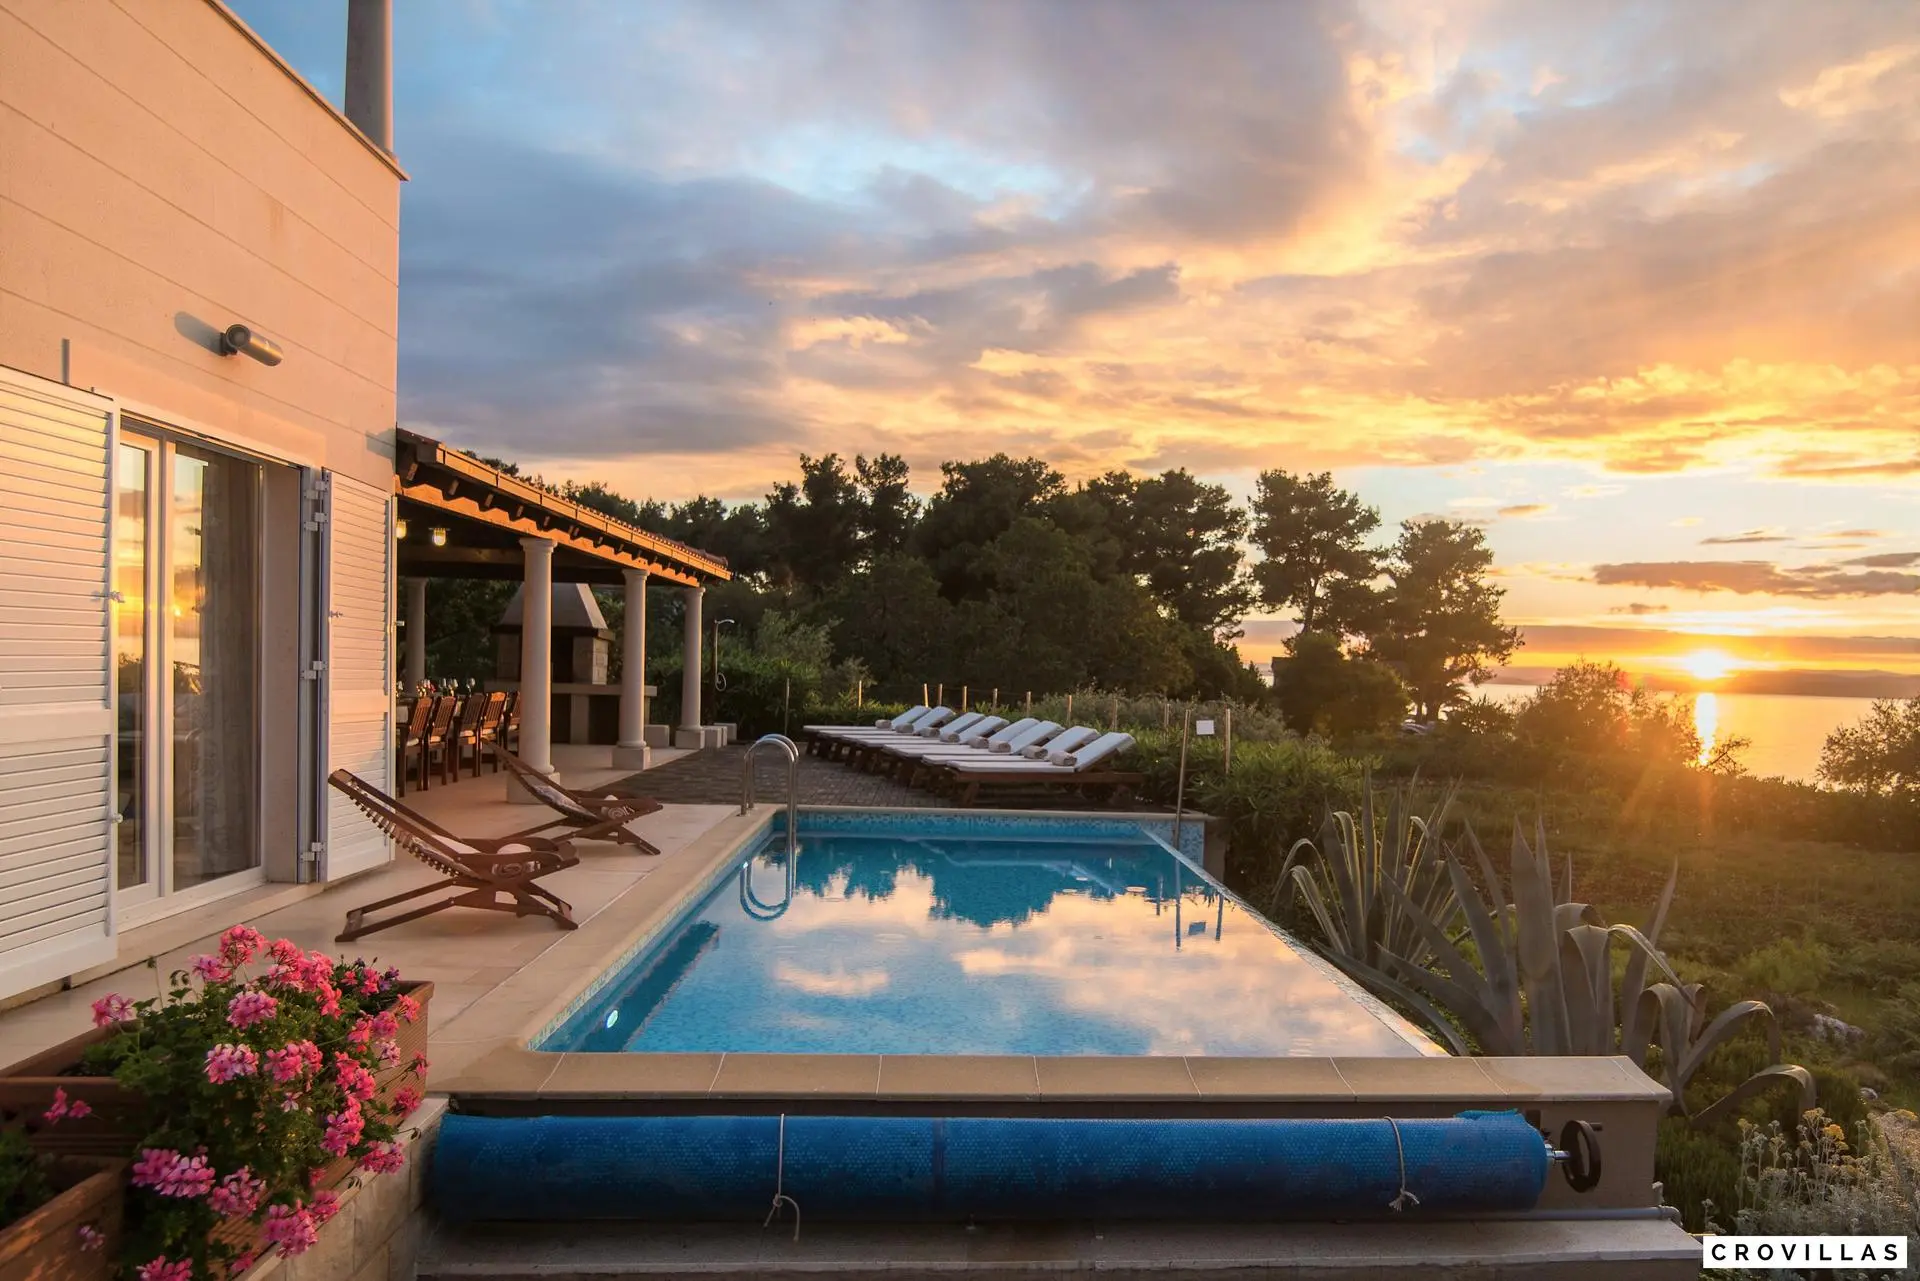 Luxuriöse Villa auf der Insel Brac mit Pool und Meerblick bei Sonnenuntergang, umgeben von grüner Vegetation und blühenden Pflanzen. Die Terrasse bietet Liegestühle und einen Essbereich im Freien, ideal für entspannte Abende.